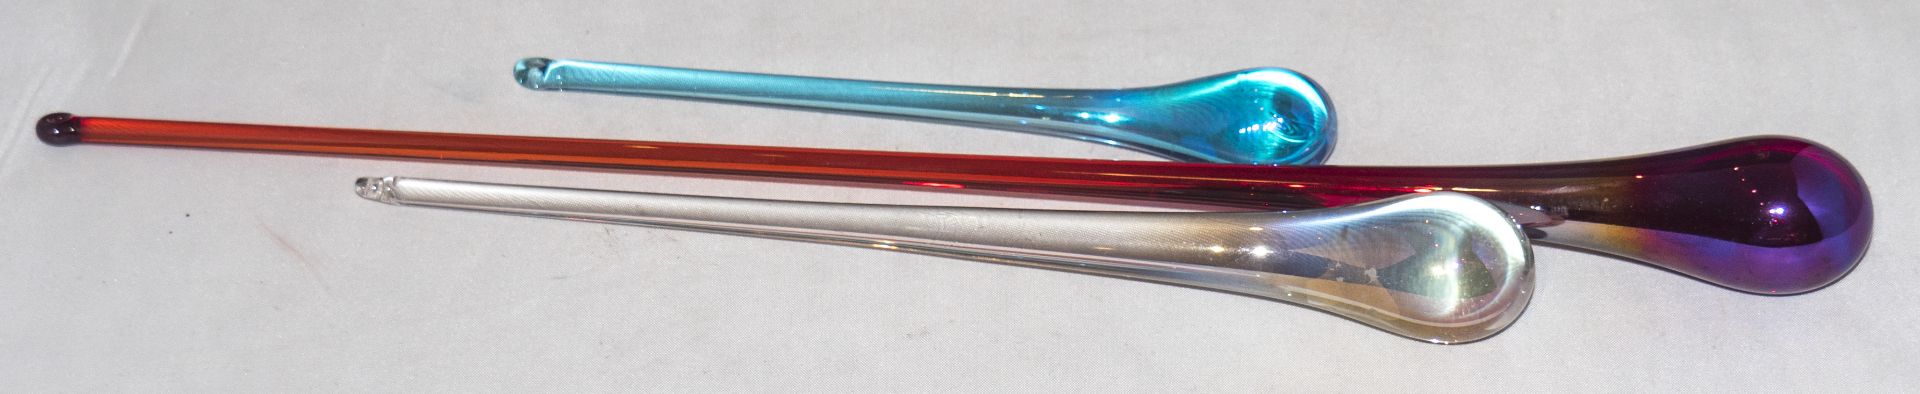 3 mundgeblasene Glastropfen, 1x rot/lila, Länge ca. 32 cm, 1x weiß/gold, Länge ca. 21 cm, sowie 1x